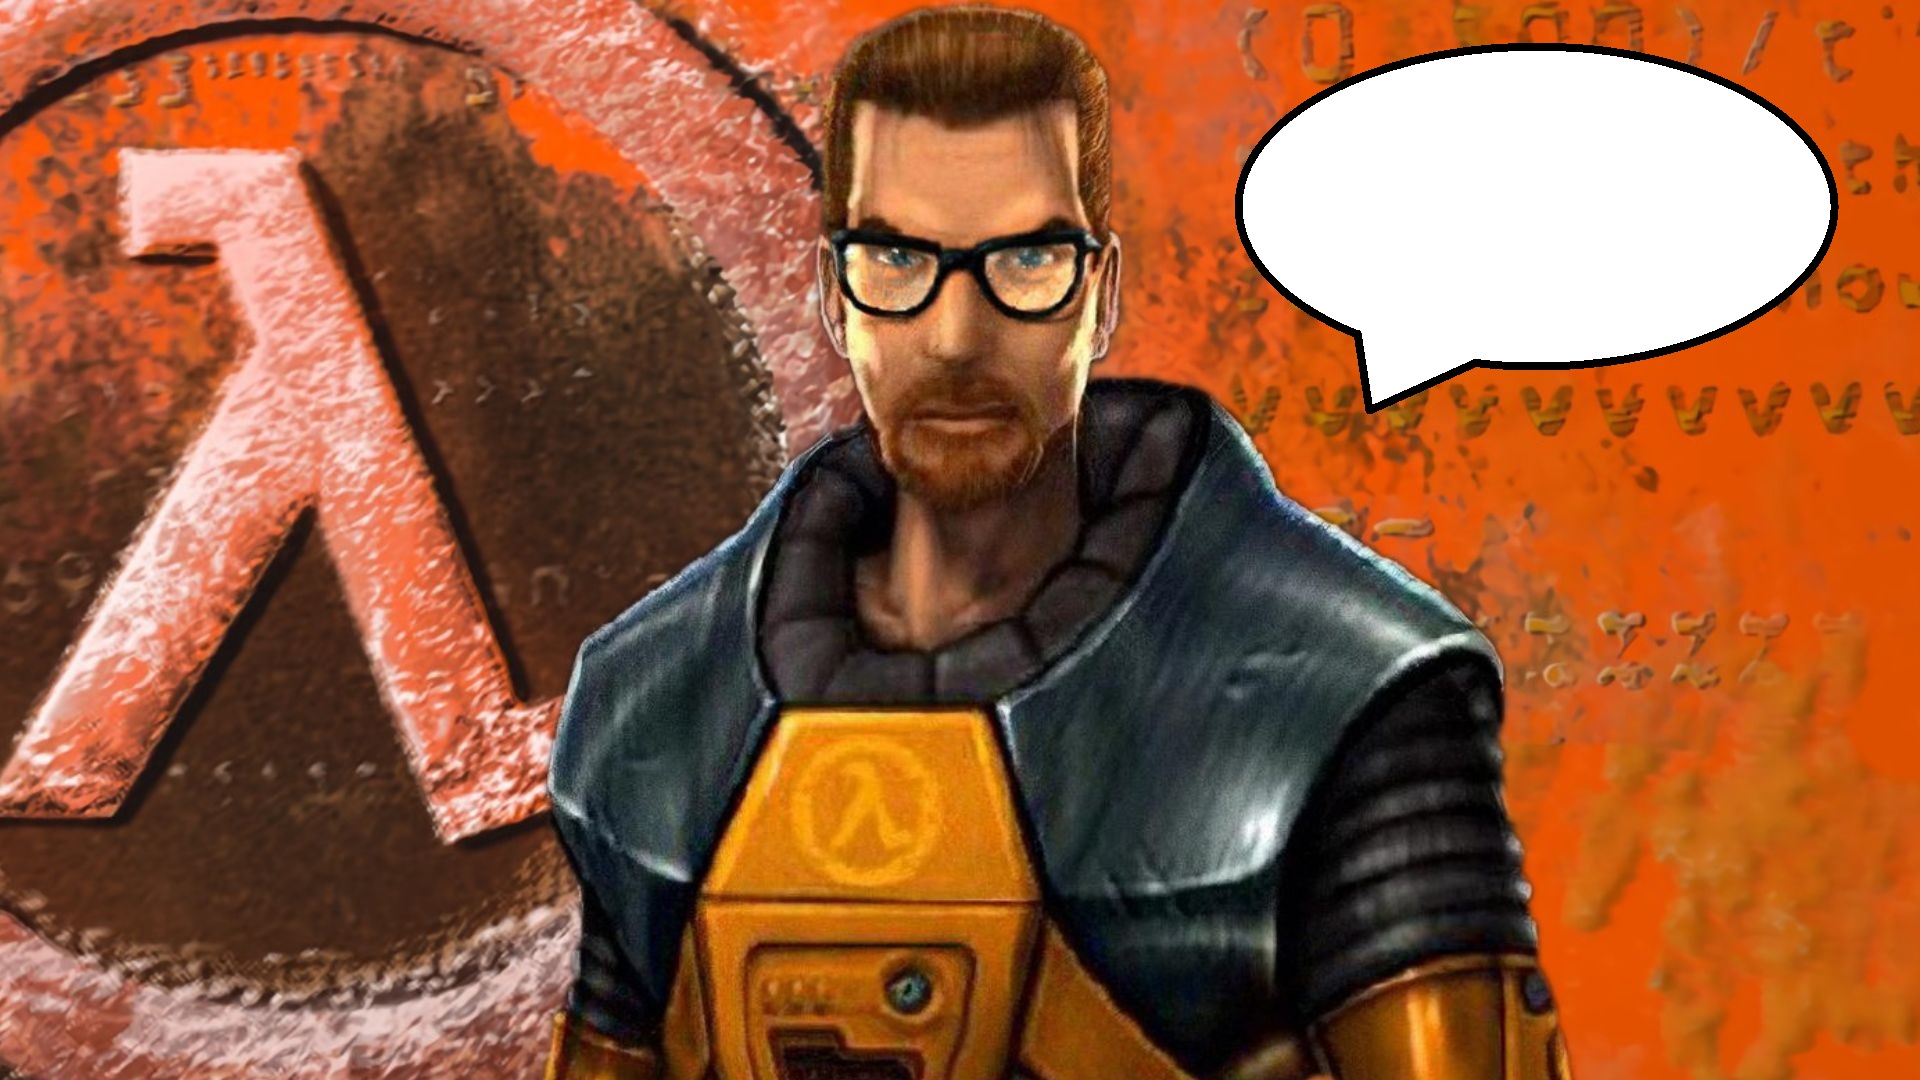 Weird Half-Life secret shows Gordon Freeman can actually talk, kind of